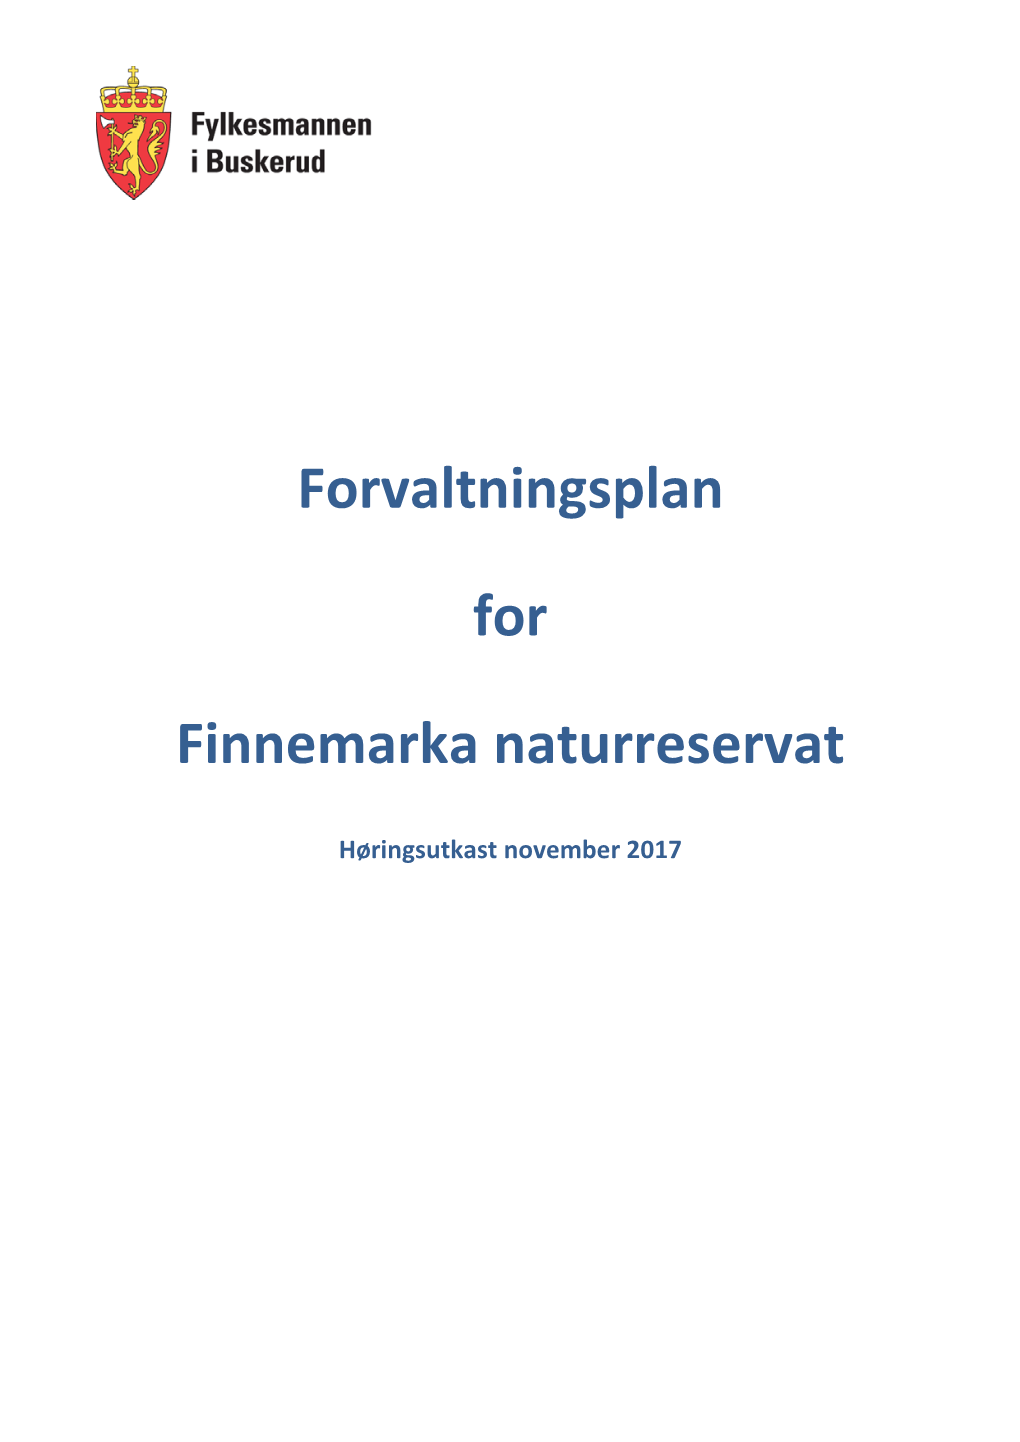 Forvaltningsplan for Finnemarka Naturreservat